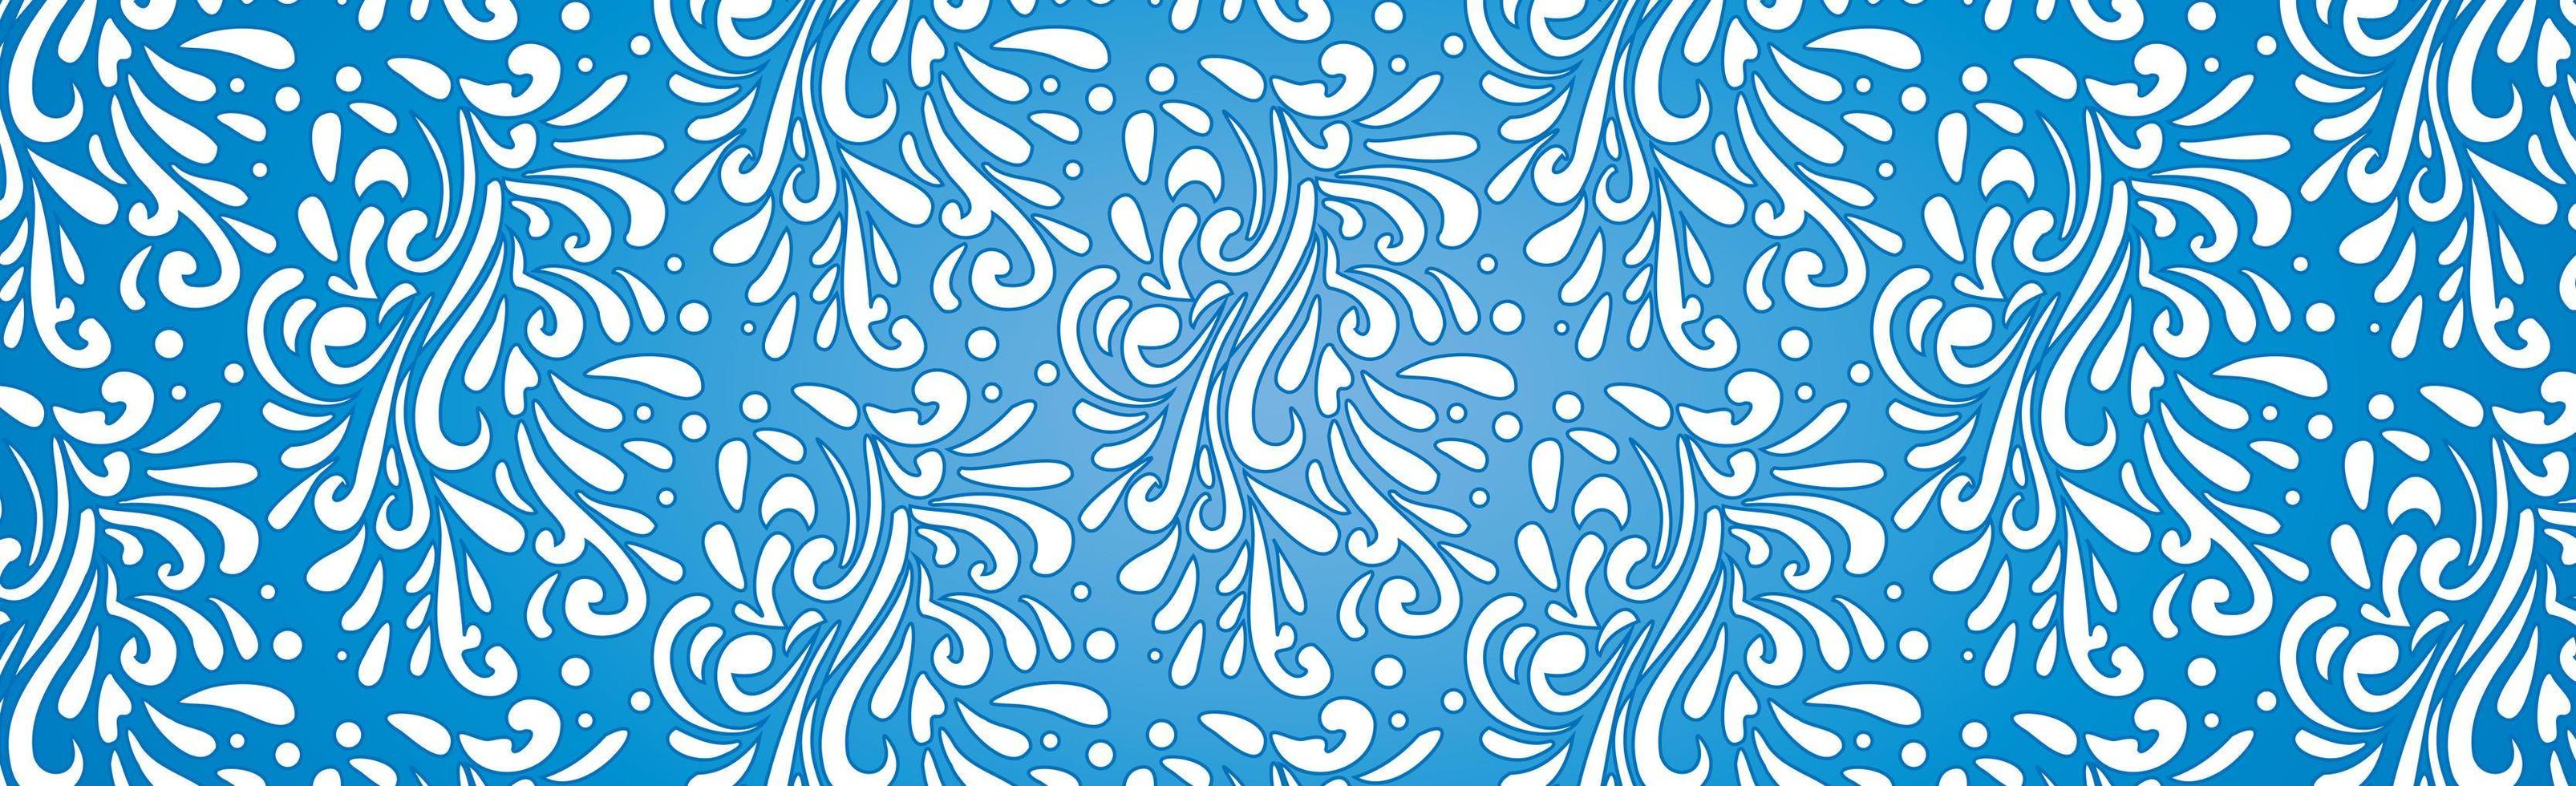 abstracte ijzige patronen, panoramische blauwe en witte webpatroonachtergrond - vector